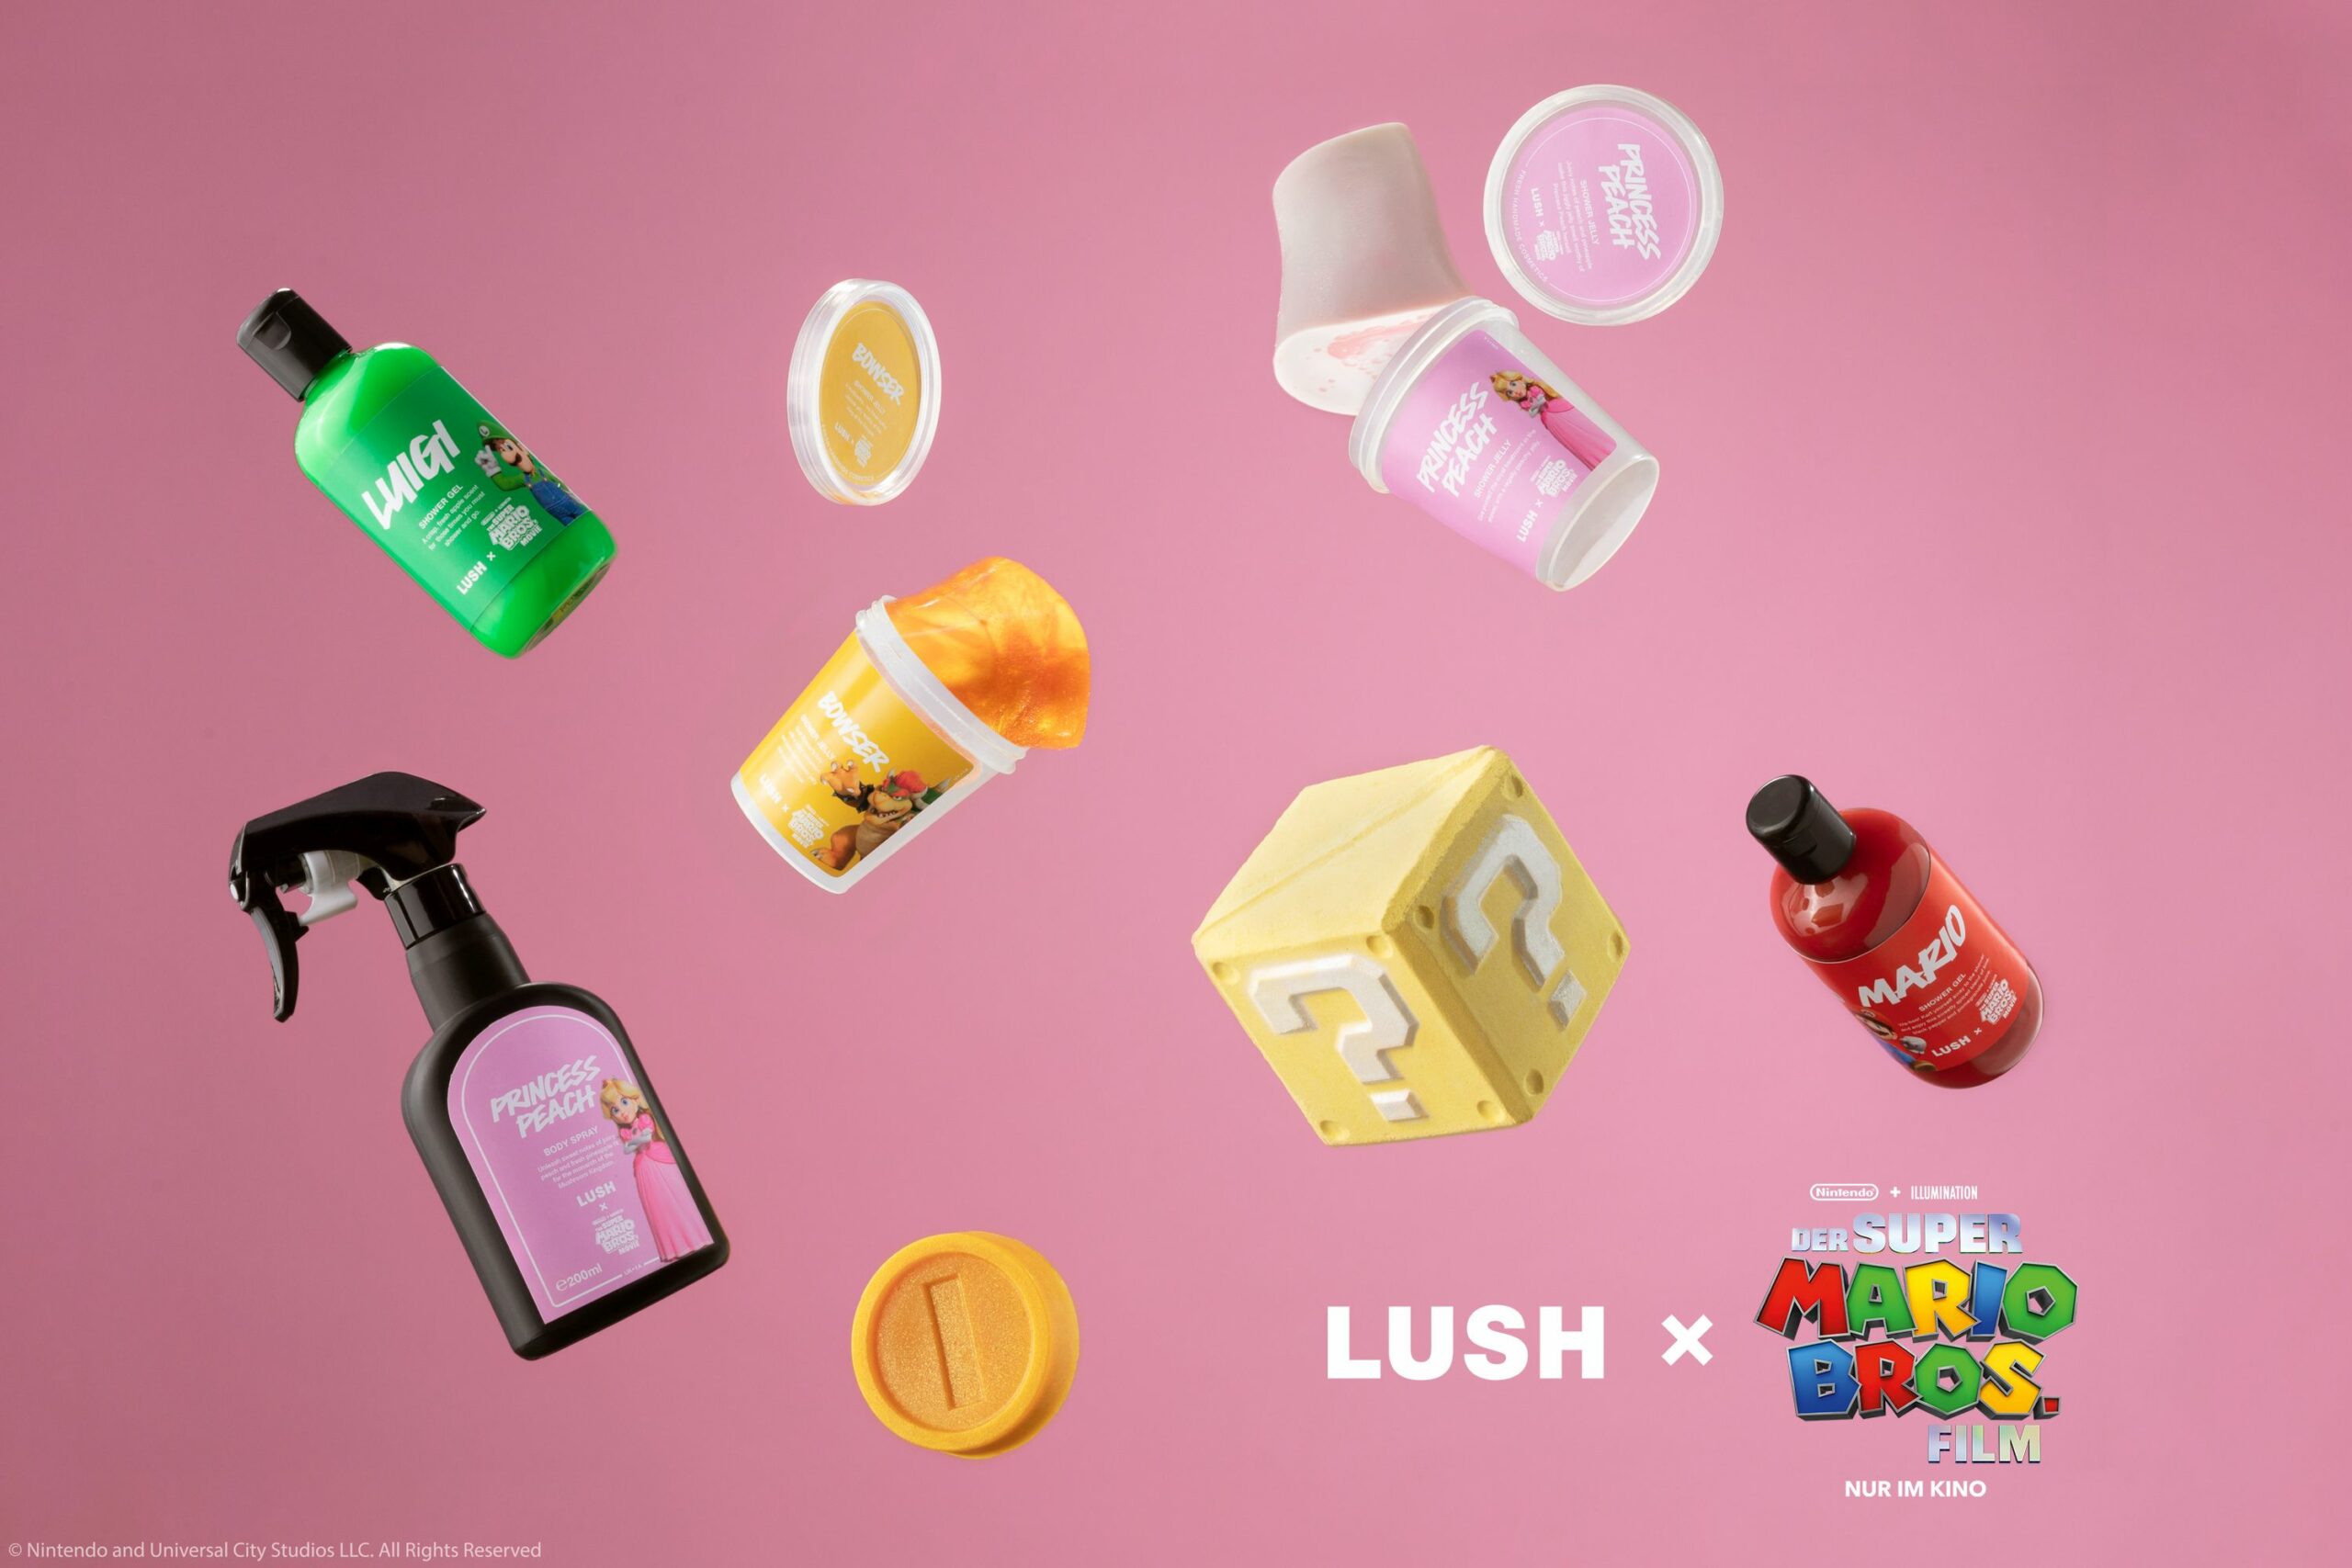 #Duften wie die Klempner: Lush bringt Dusch-Kollektion zum Super Mario Bros. Film heraus